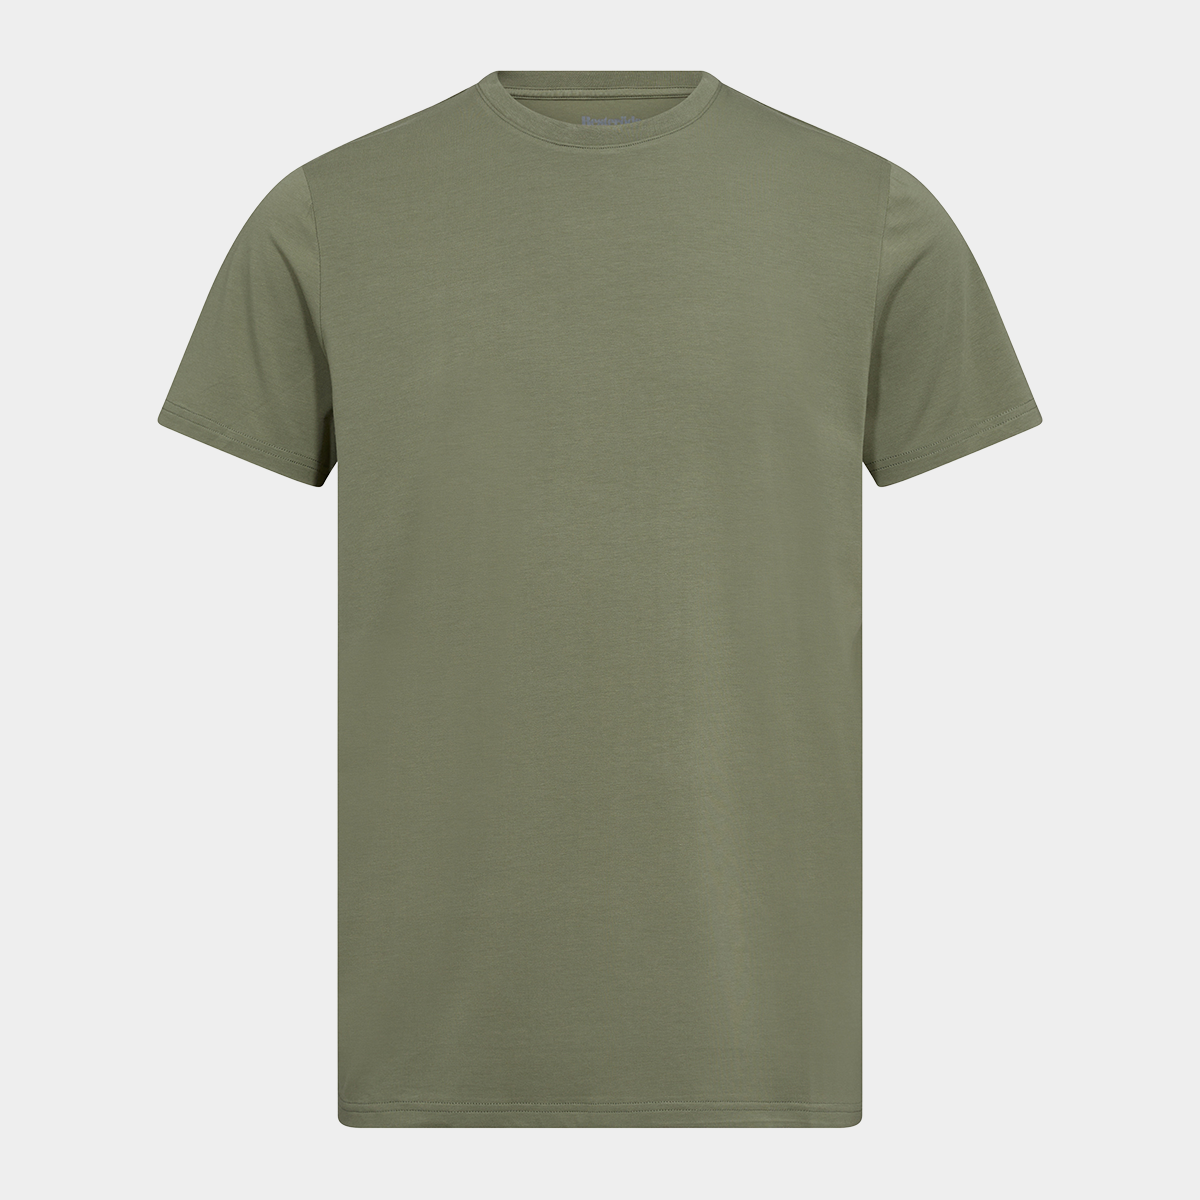 Se Grøn bambus r-neck t-shirt til herre fra Resteröds, L hos Bambustøj.dk